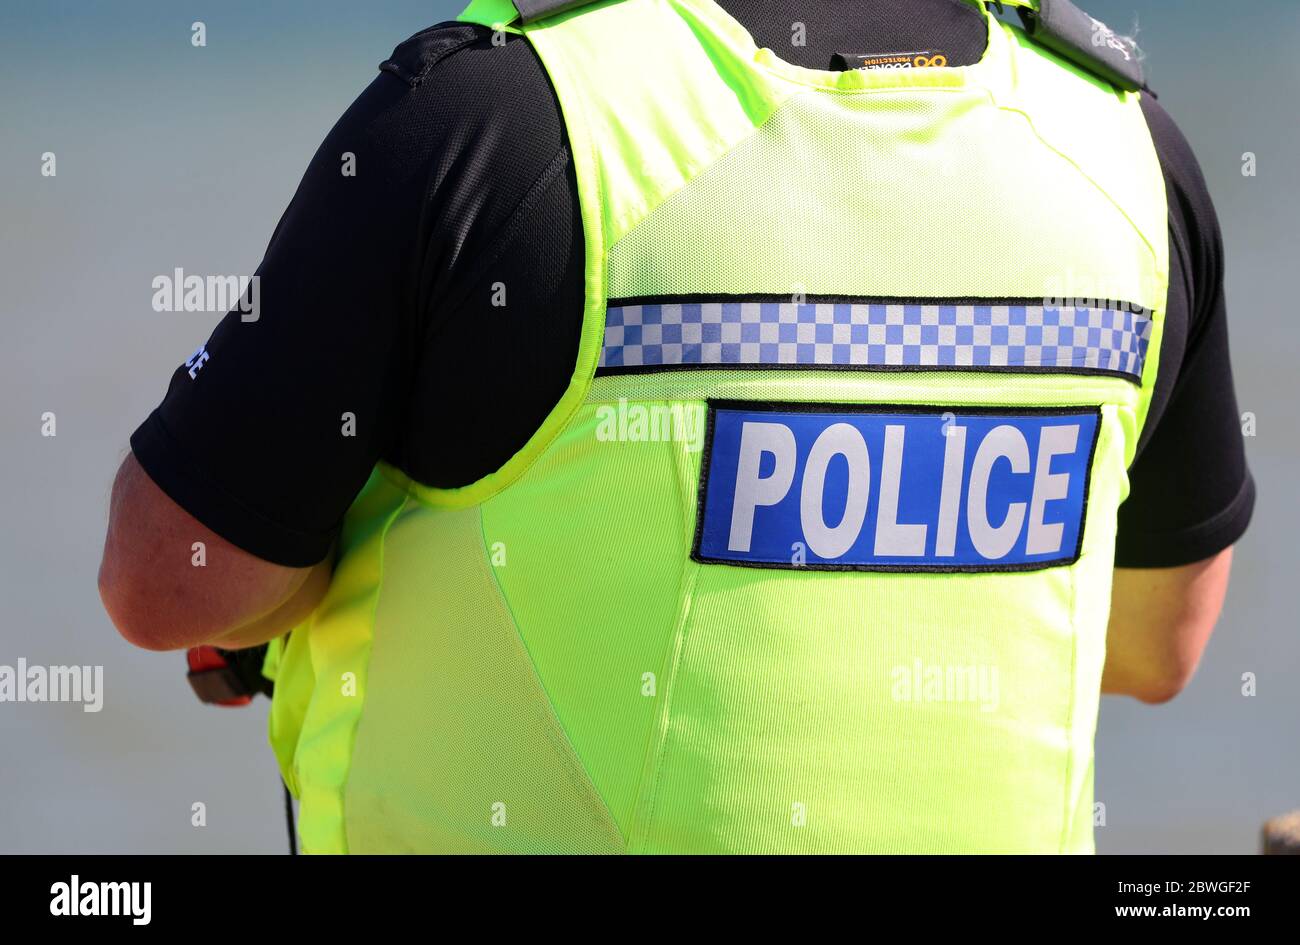 Hampshire Polizist auf Benzin an einem Strand in Großbritannien Stockfoto